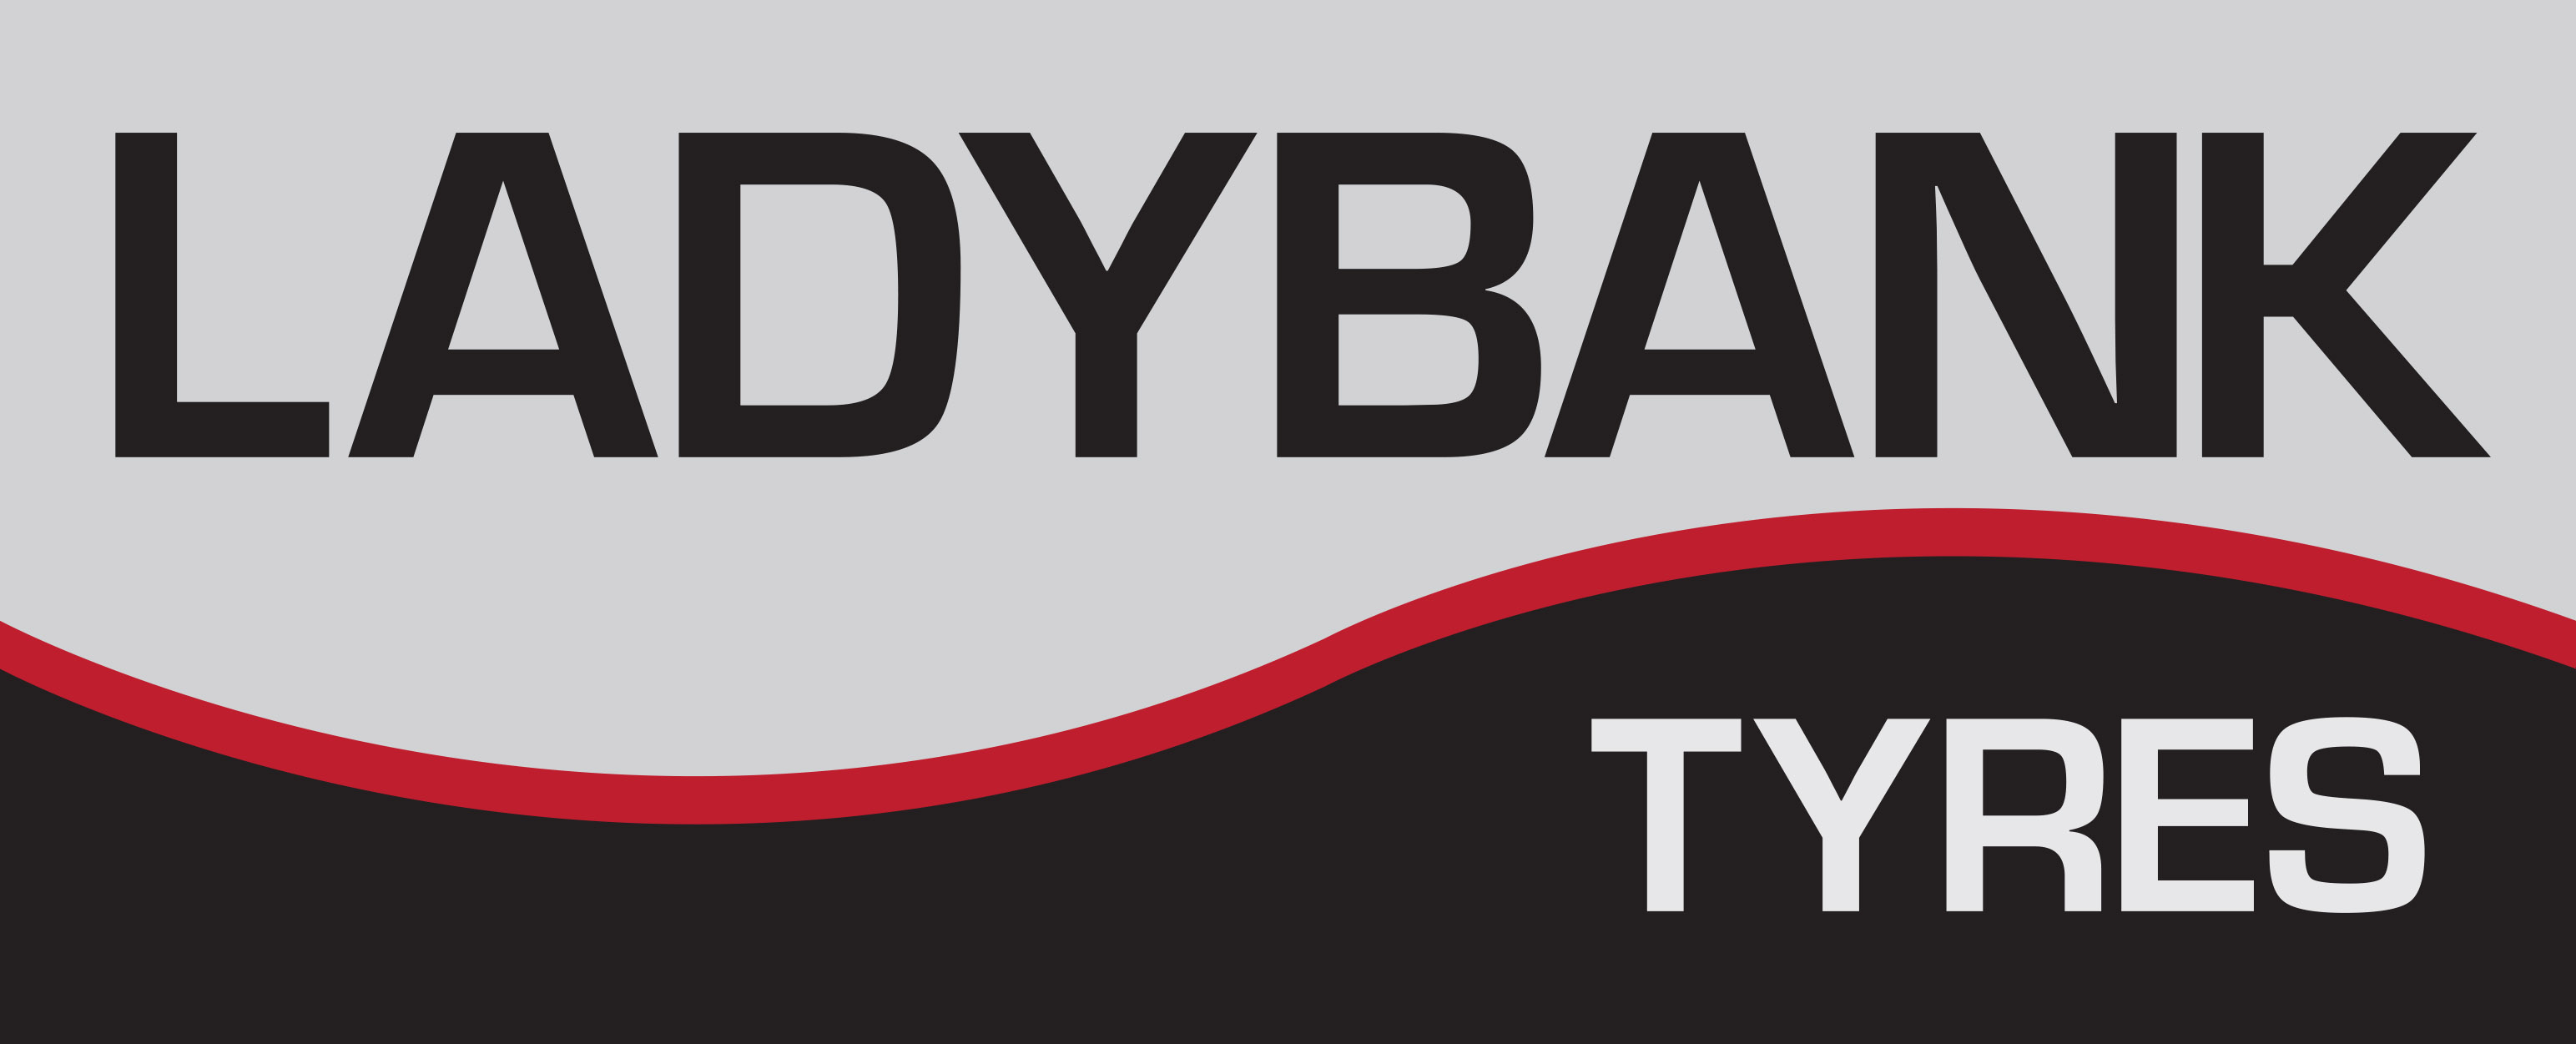 Ladybank Tyres Ltd (Ladybank)